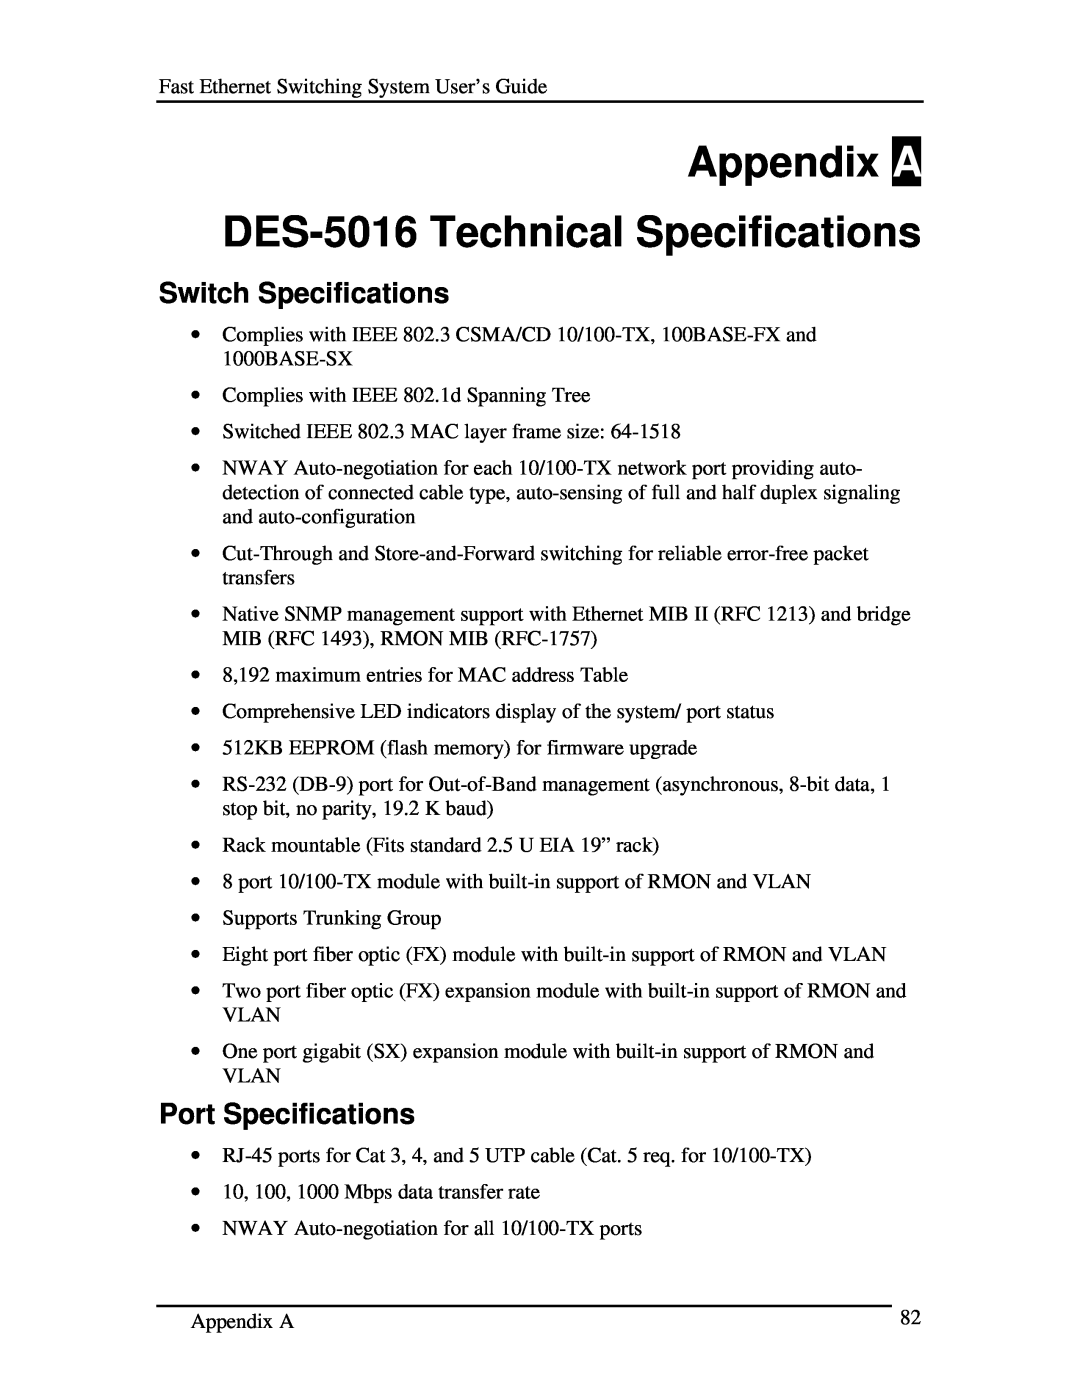 D-Link manual Appendix A DES-5016 Technical Specifications, Switch Specifications, Port Specifications 